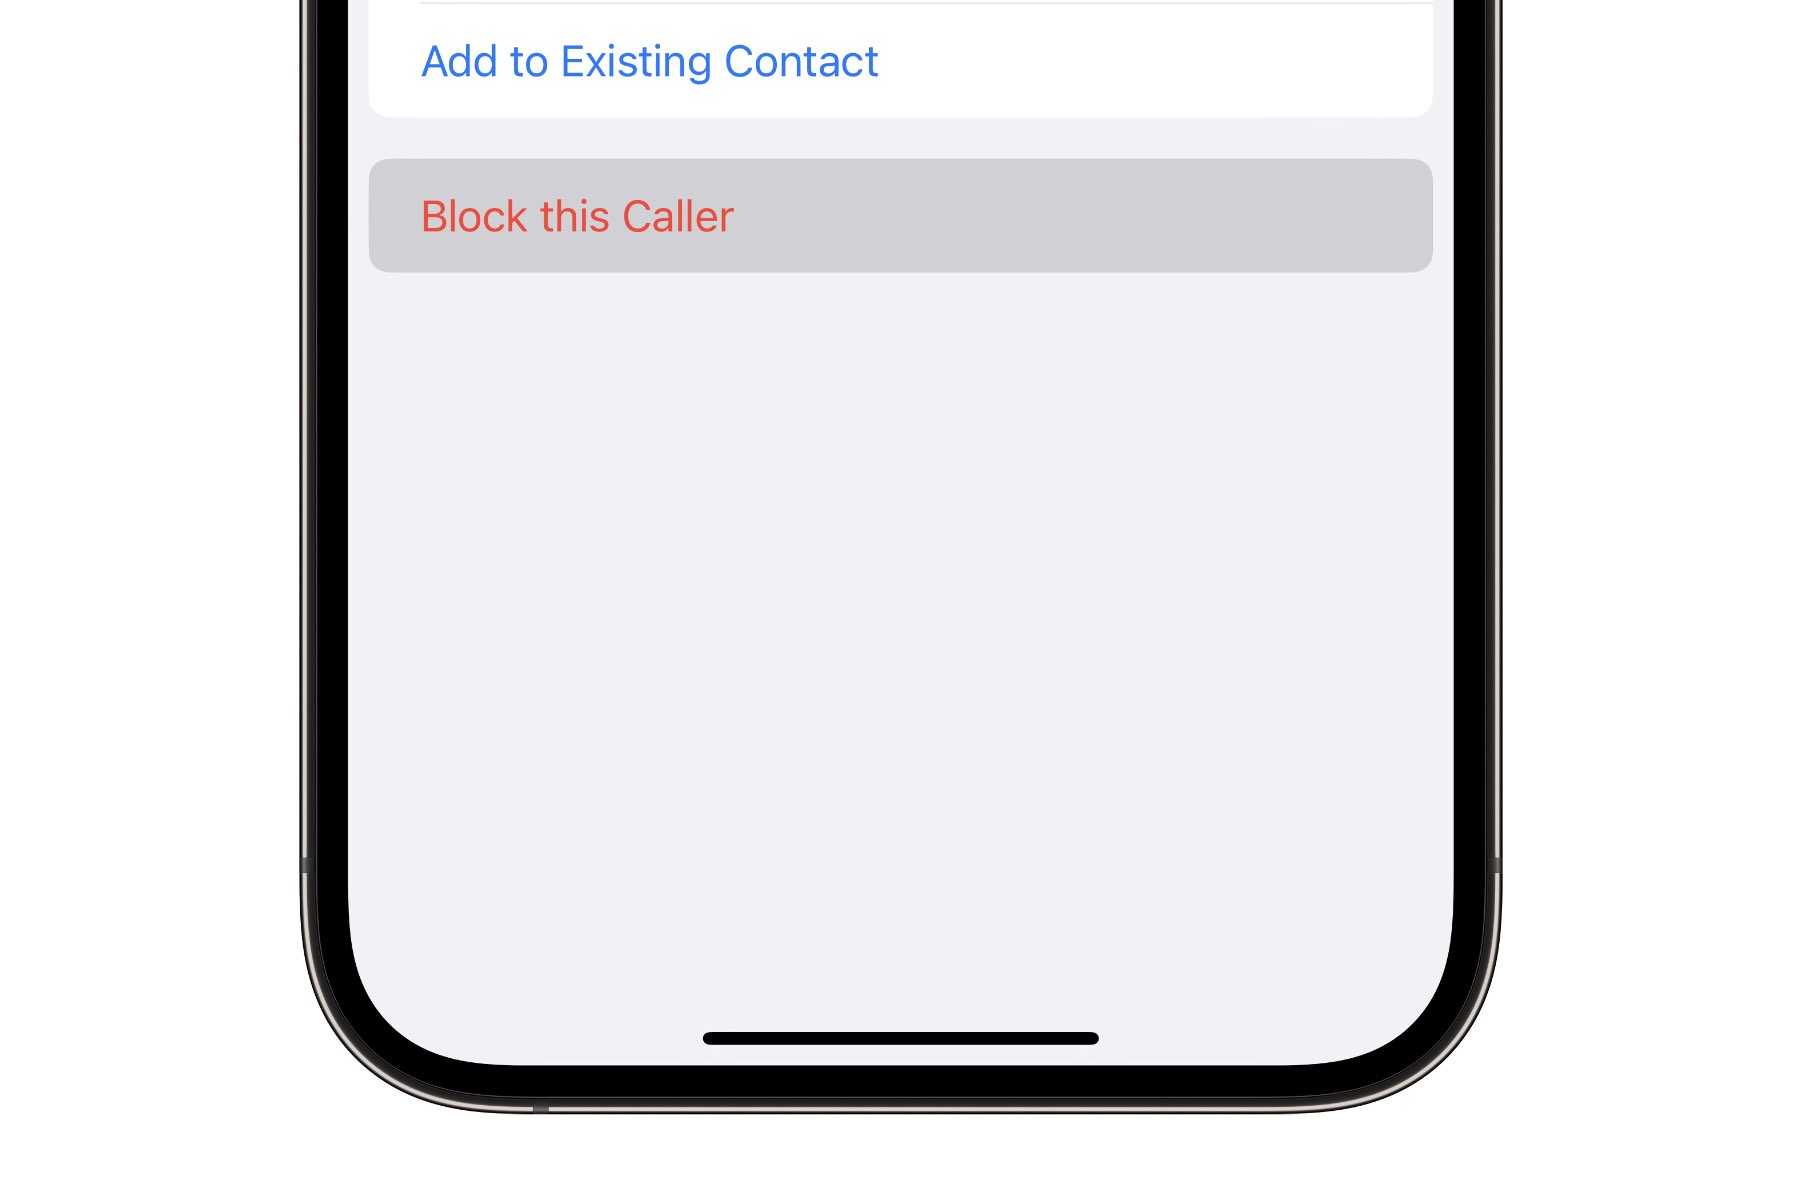 Opção de bloquear o contato no aplicativo Mensagens do iPhone